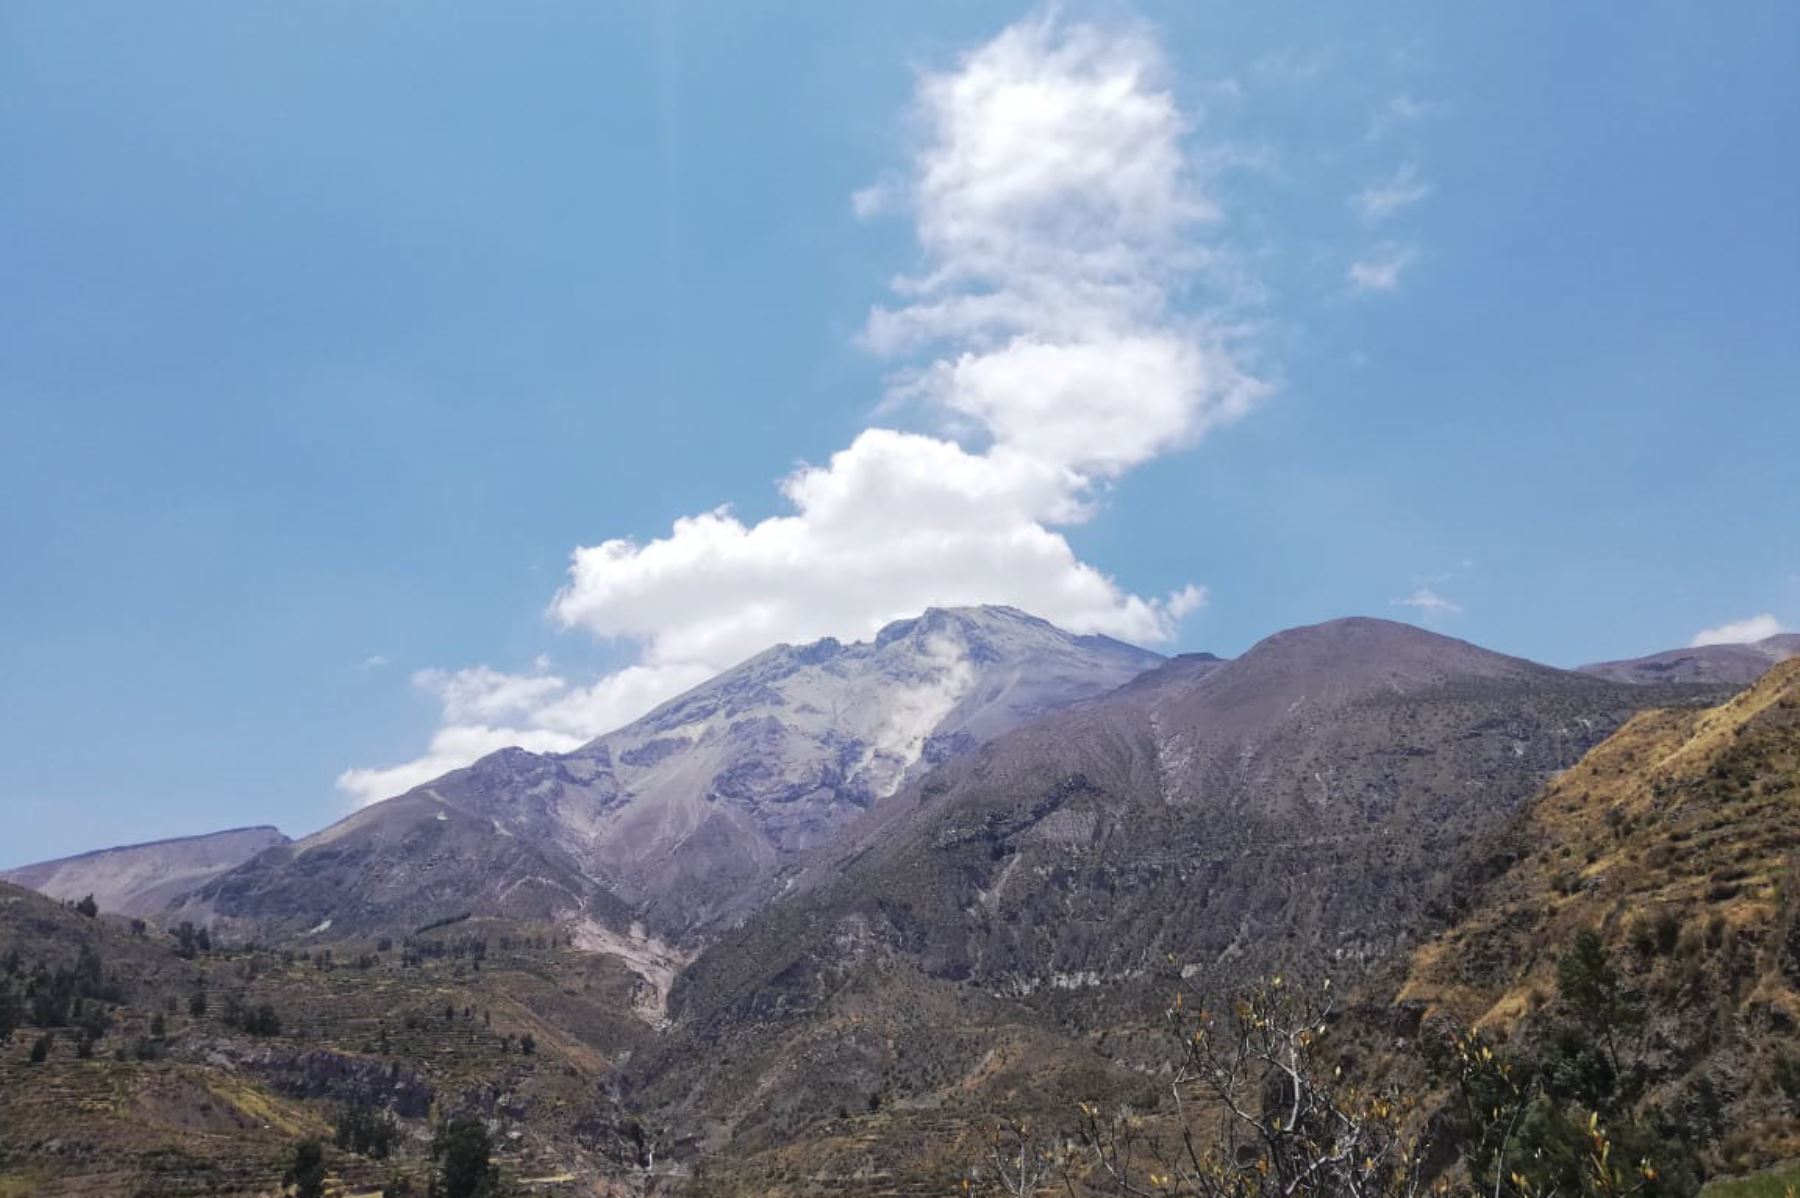 Esta mañana se registró la caída de rocas en el flanco sureste del volcán Ubinas, región Moquegua, sin ocasionar daños. Foto: Ingemmet